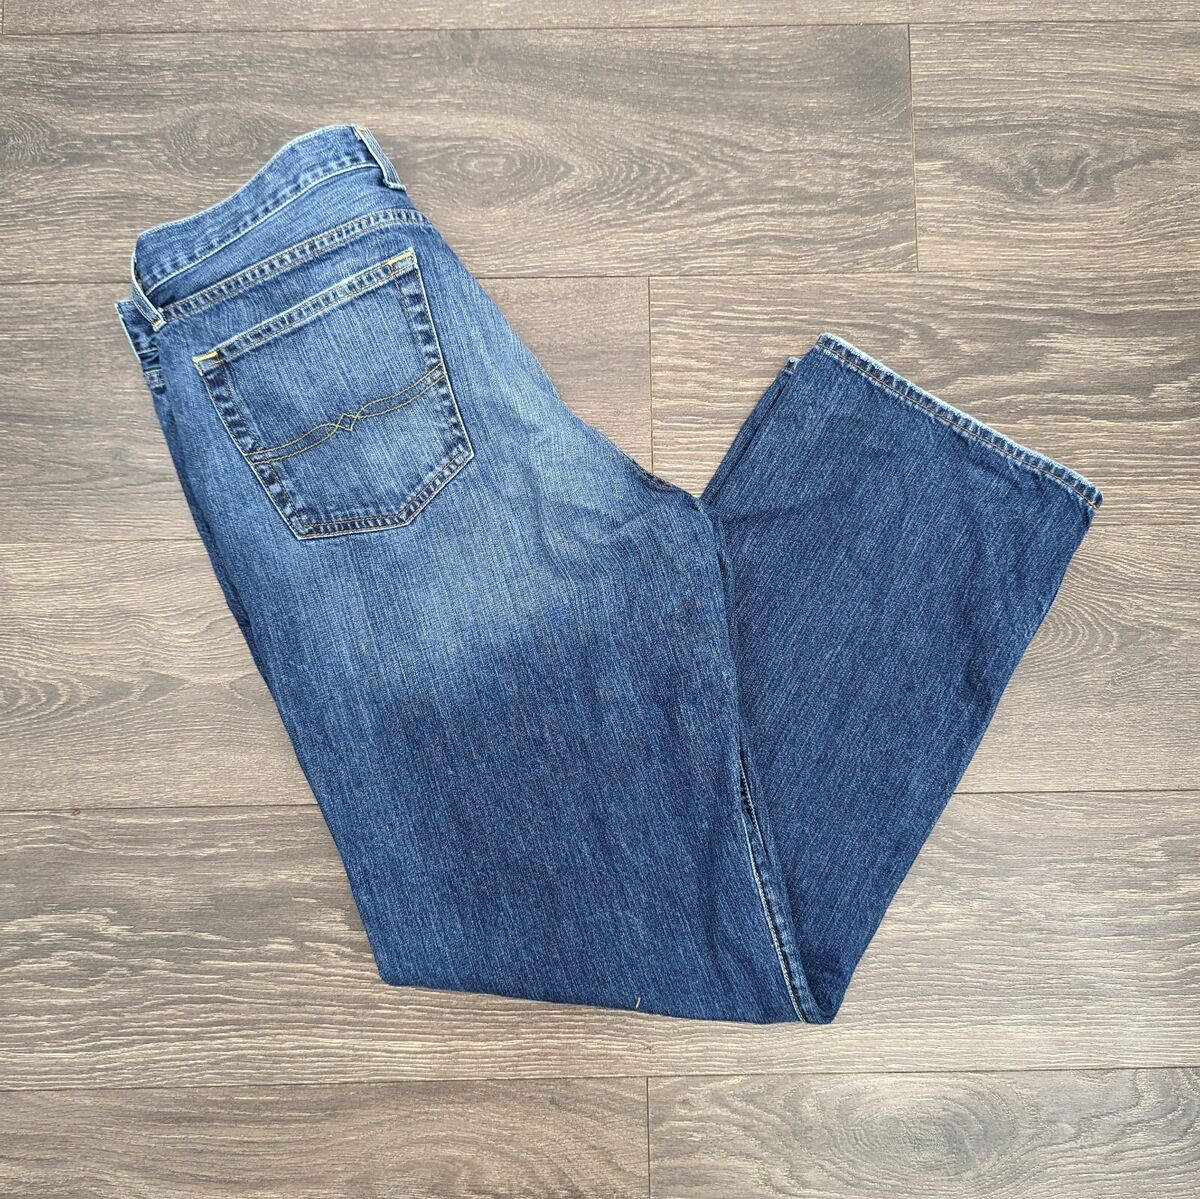 Lucky Brand Straight Leg Jeans Men's Size 38 100% Cotton Dark Wash Denim